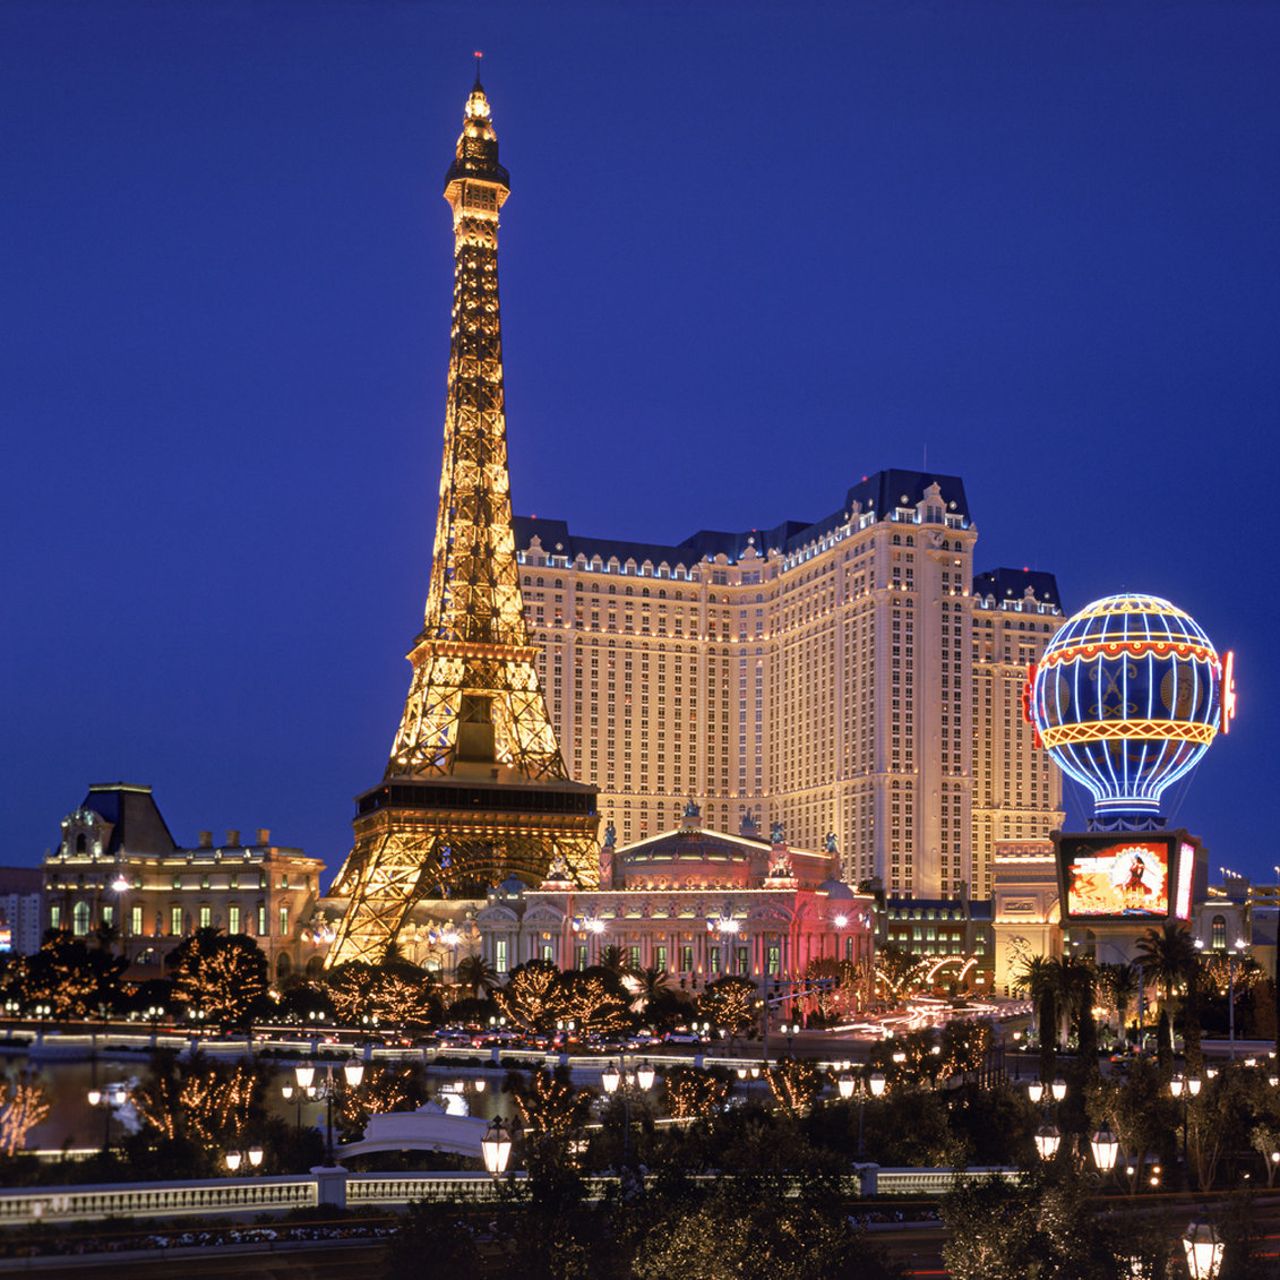 Las Vegas Hilton - The International Hotel Employees Nostalgia